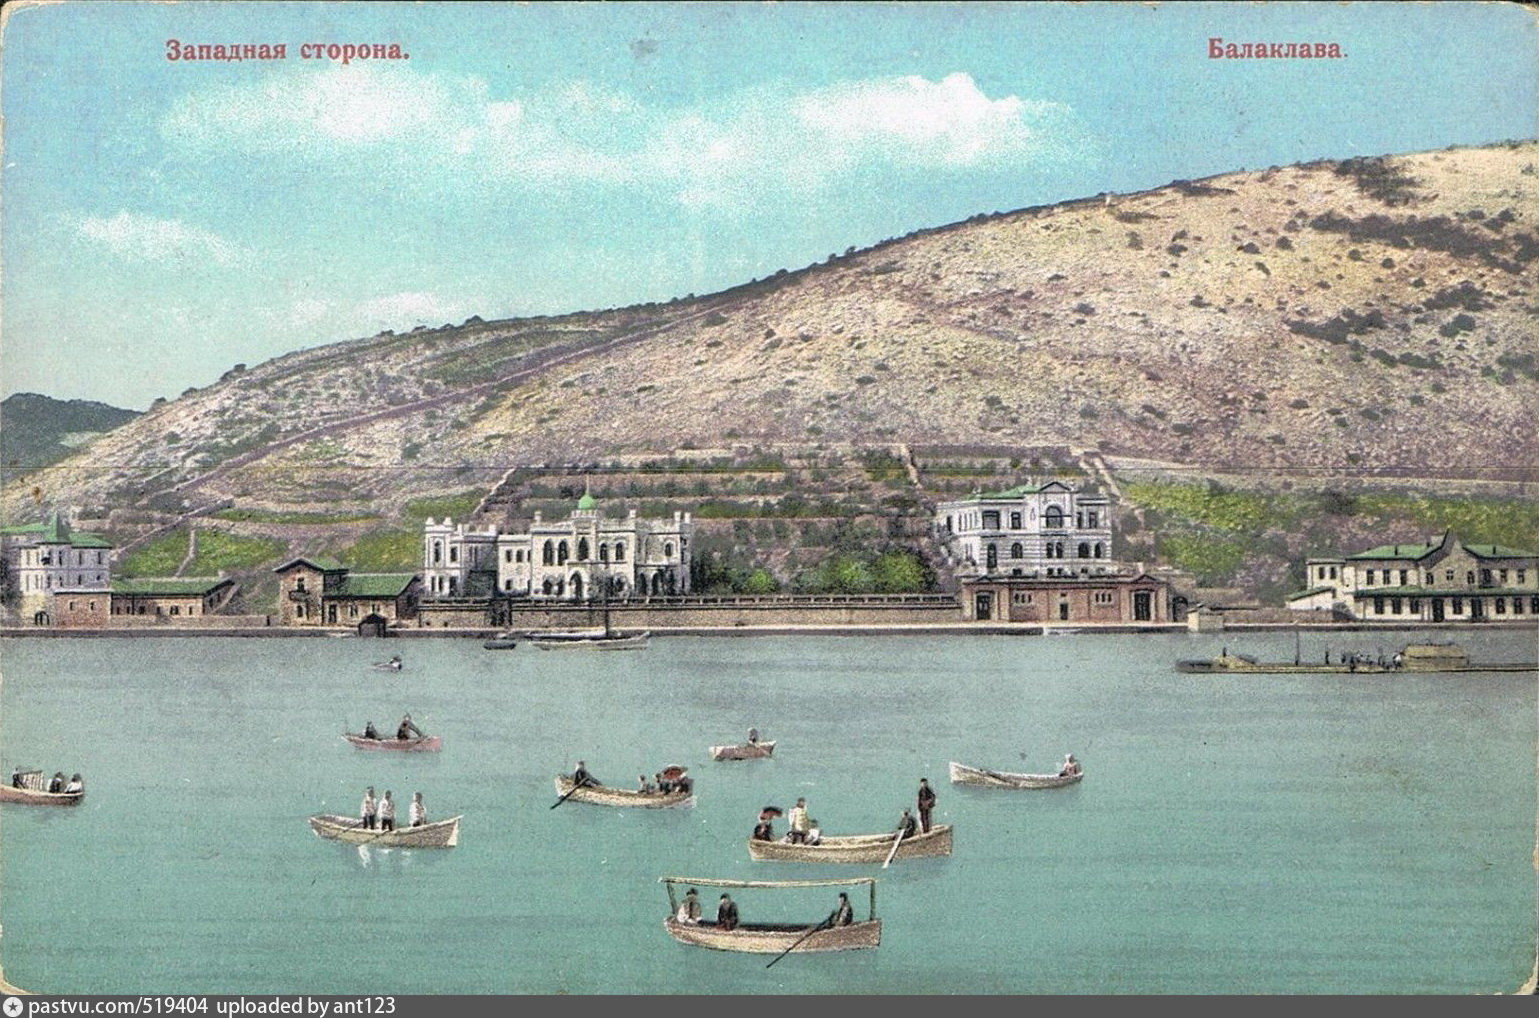 Балаклавская бухта в 1854 году